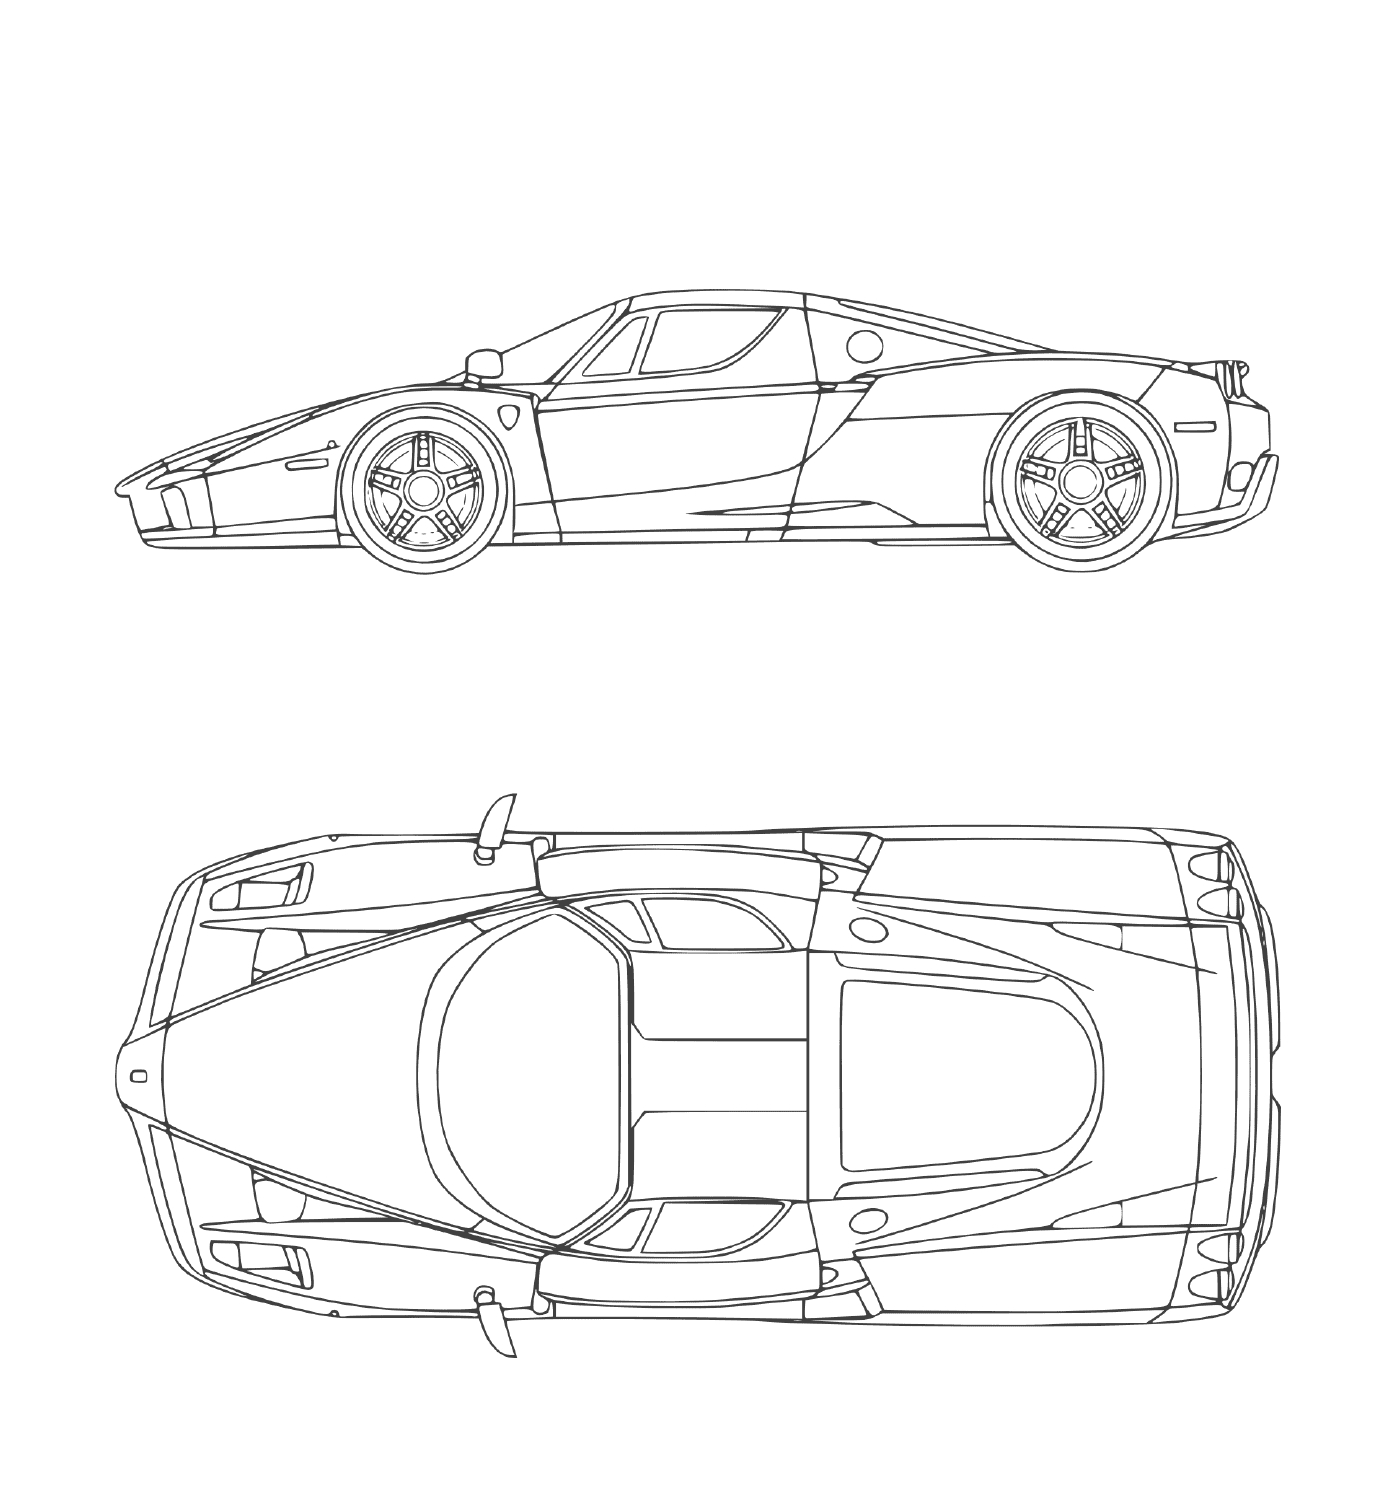  Ein Super-Rennwagen Ferrari Enzo 